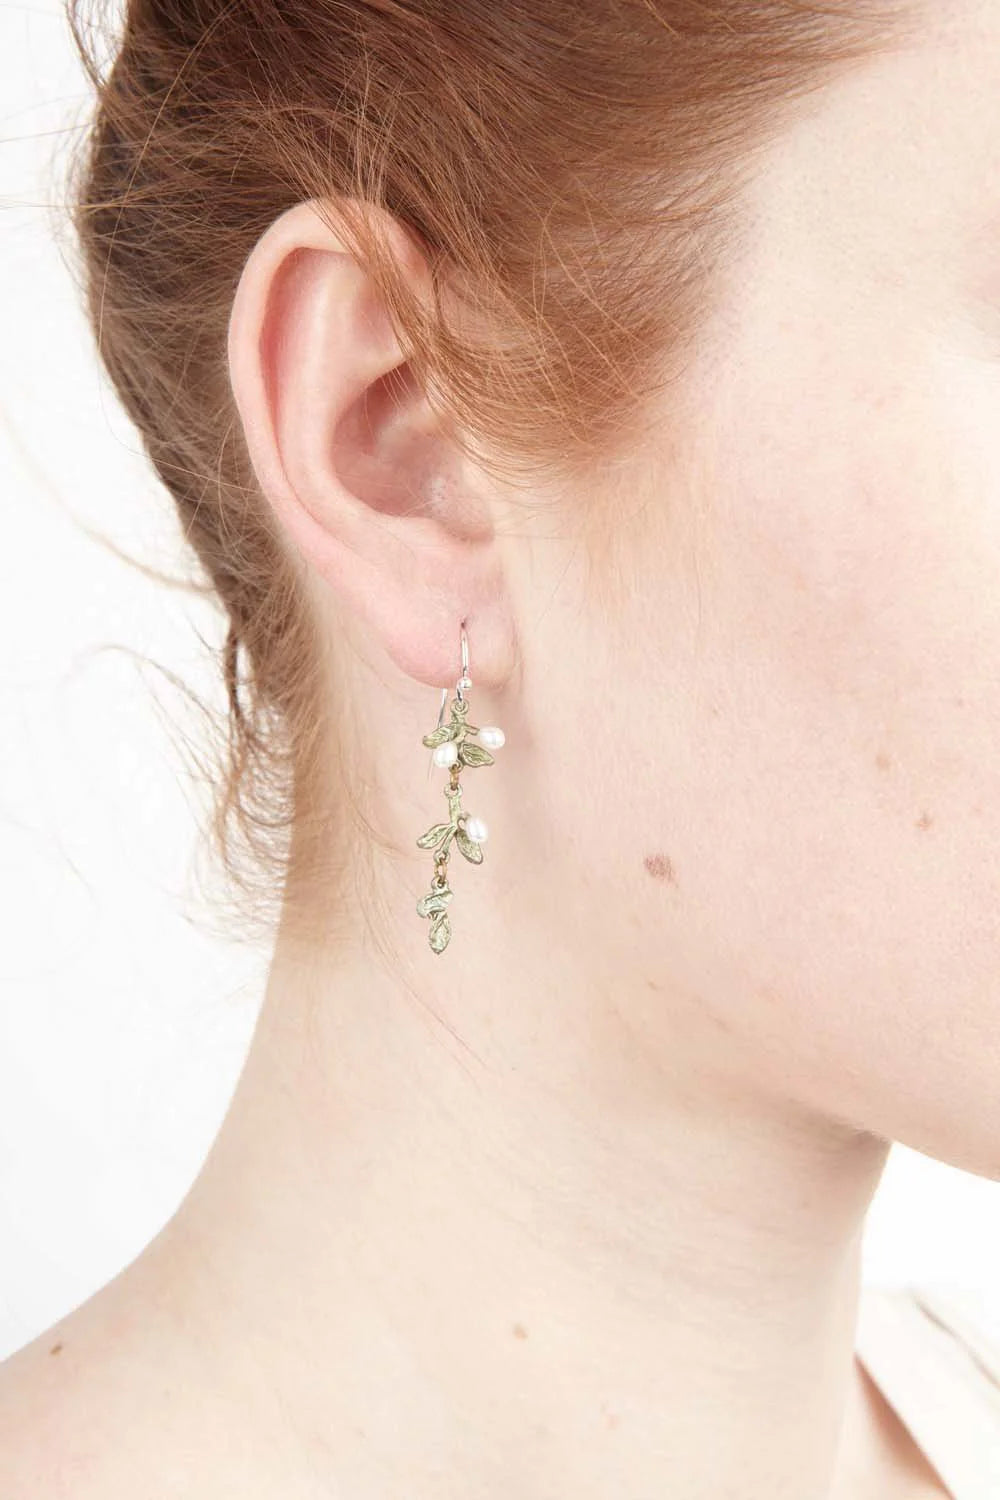 Carolina Drop Earrings - The Nancy Smillie Shop - Art, Jewellery & Designer Gifts Glasgow